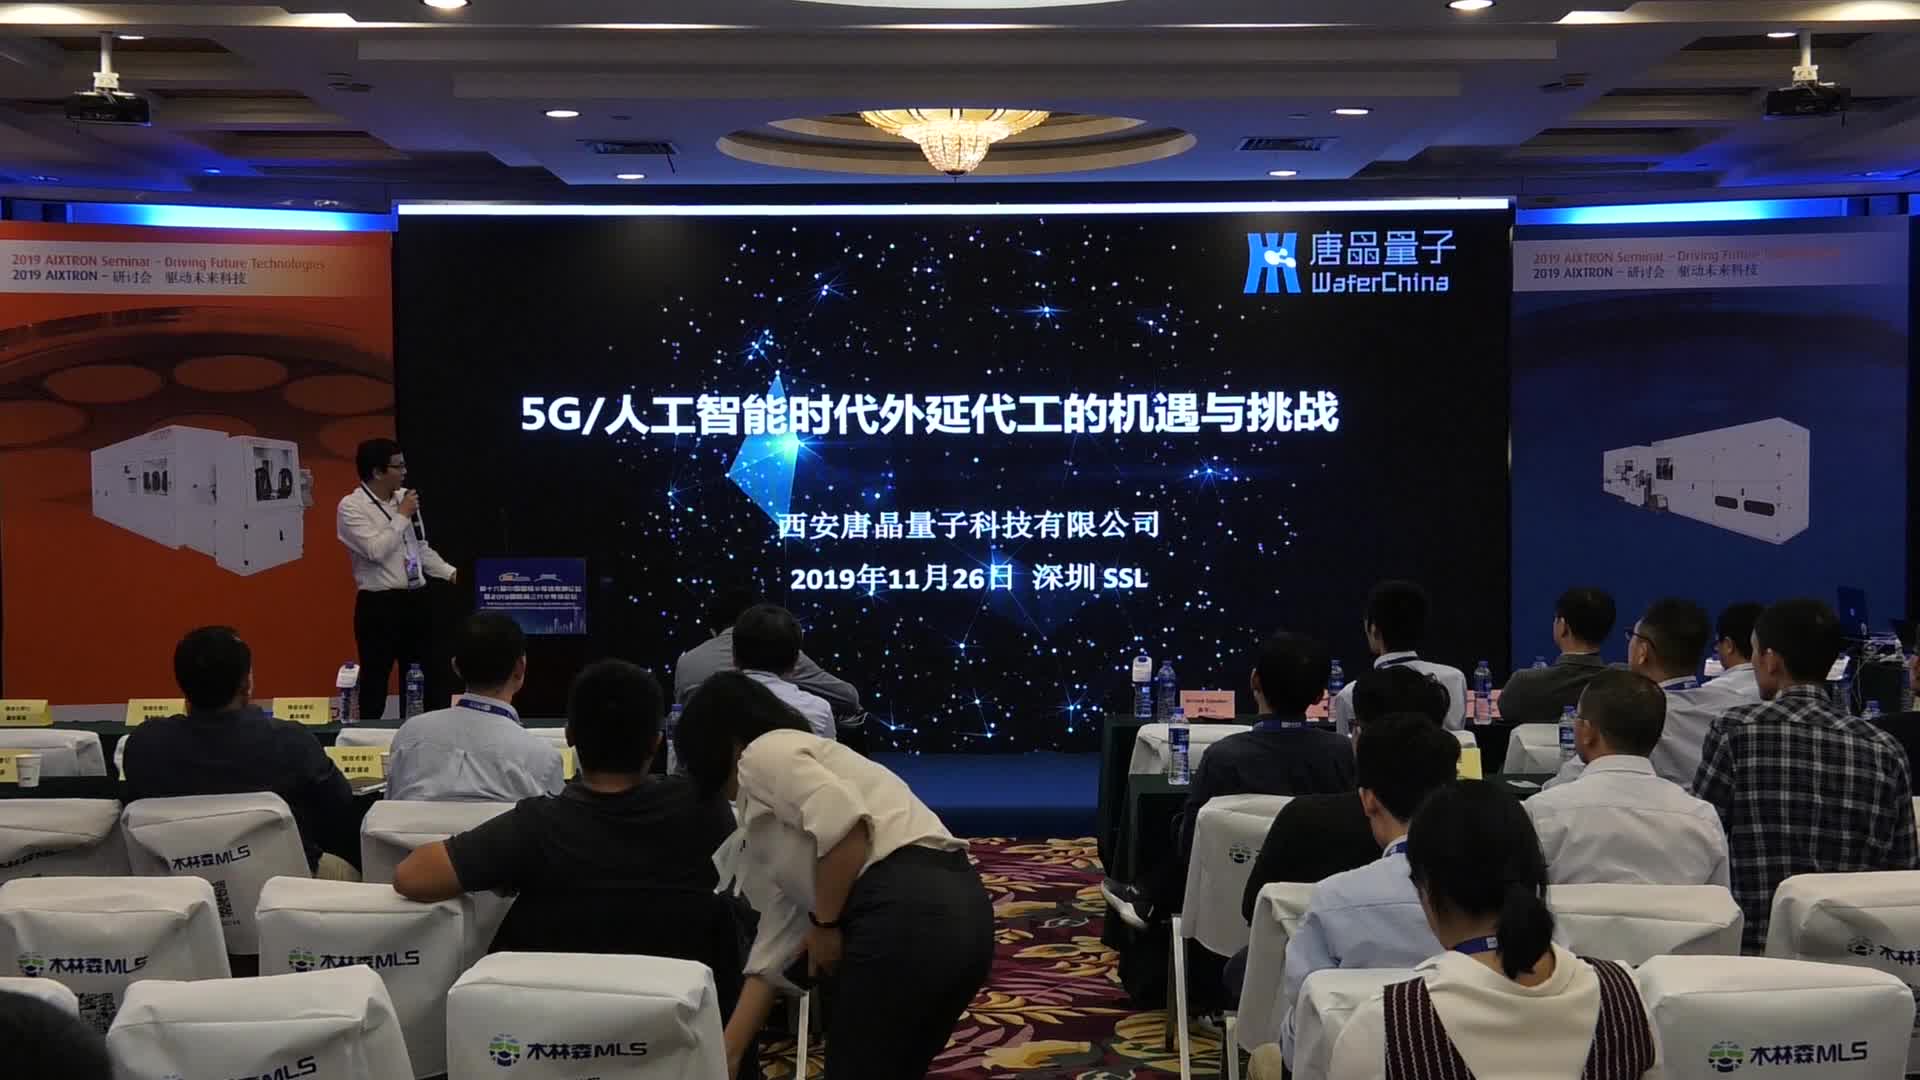 【视频报告 2019】西安唐晶量子科技CEO龚平博士：5G/人工智能时代外延代工的机遇与挑战